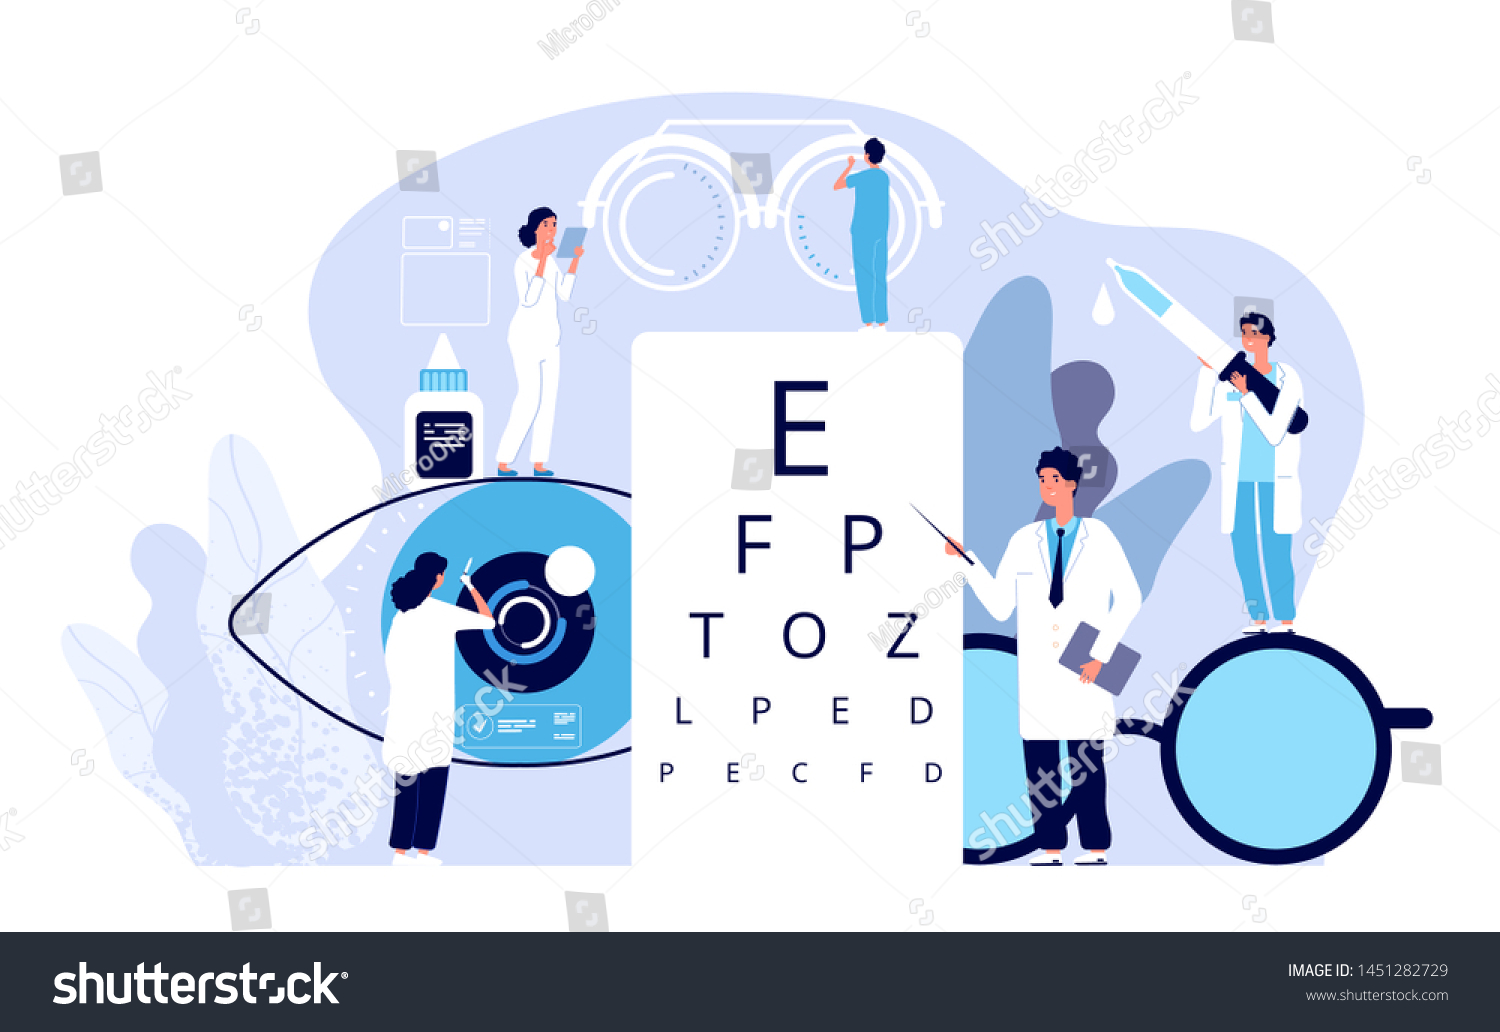 眼科のコンセプト 眼科医は患者の視力を調べる 光学的な目のテスト 眼鏡の技術 ベクター画像の美しい背景 眼科医学 光学的視力検査イラスト のベクター画像素材 ロイヤリティフリー